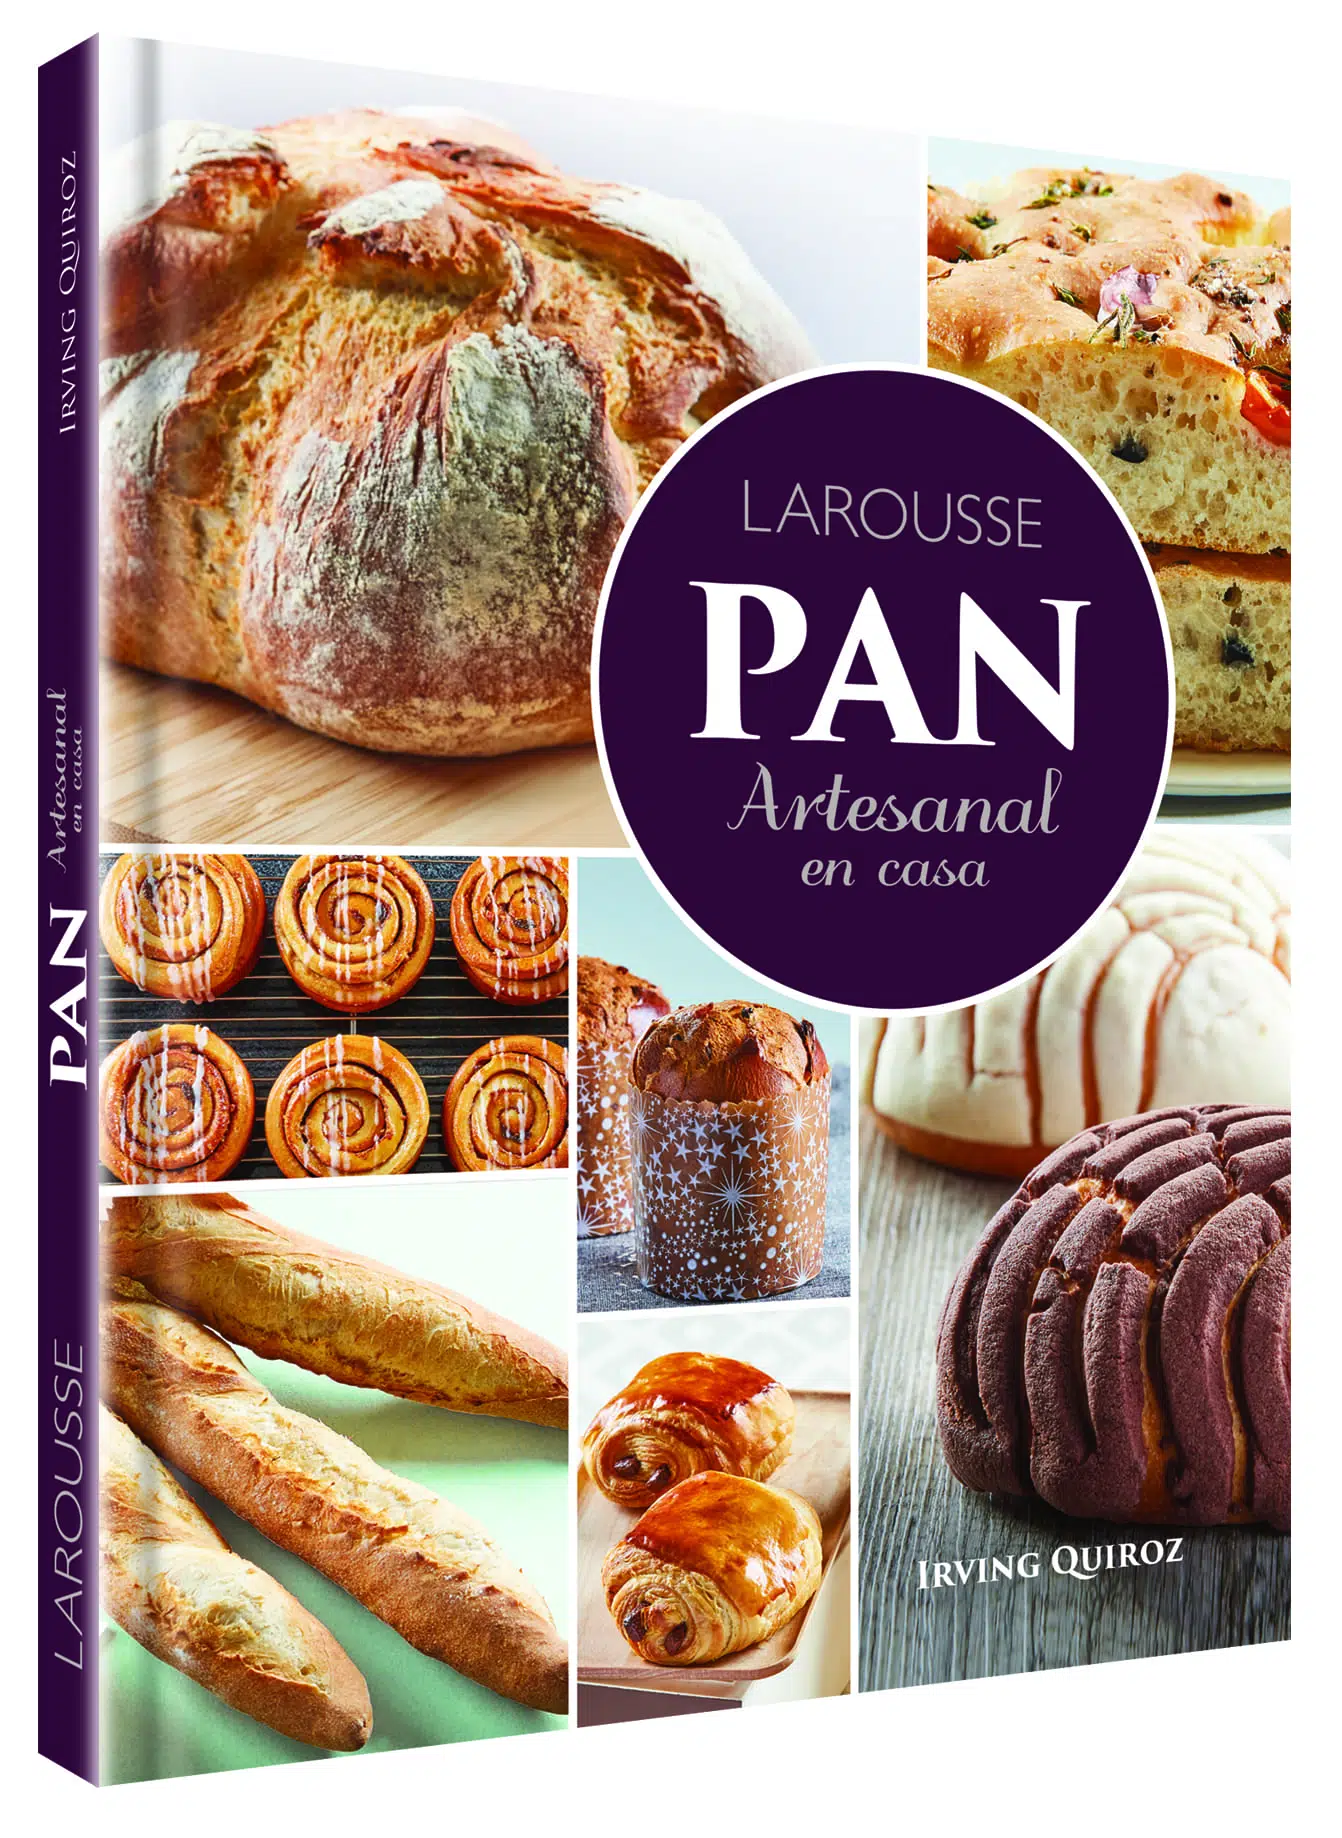 Pan artesanal en casa ⋆ Libro de Irving Quiroz ⋆ Larousse Cocina